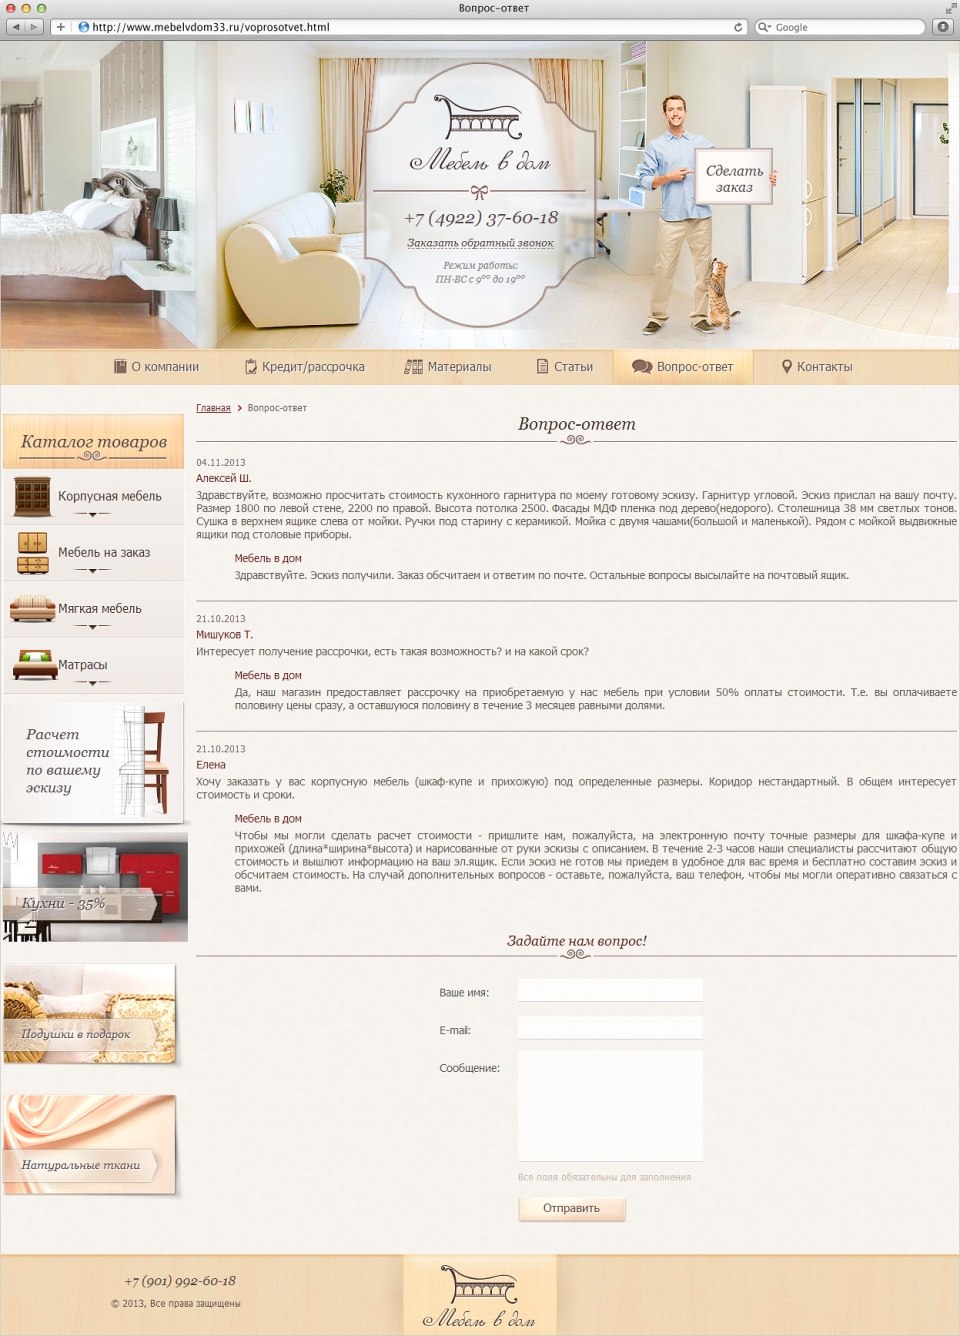 Сайт компании "Мебель в дом" - поставщика корпусной и мягкой мебели 4